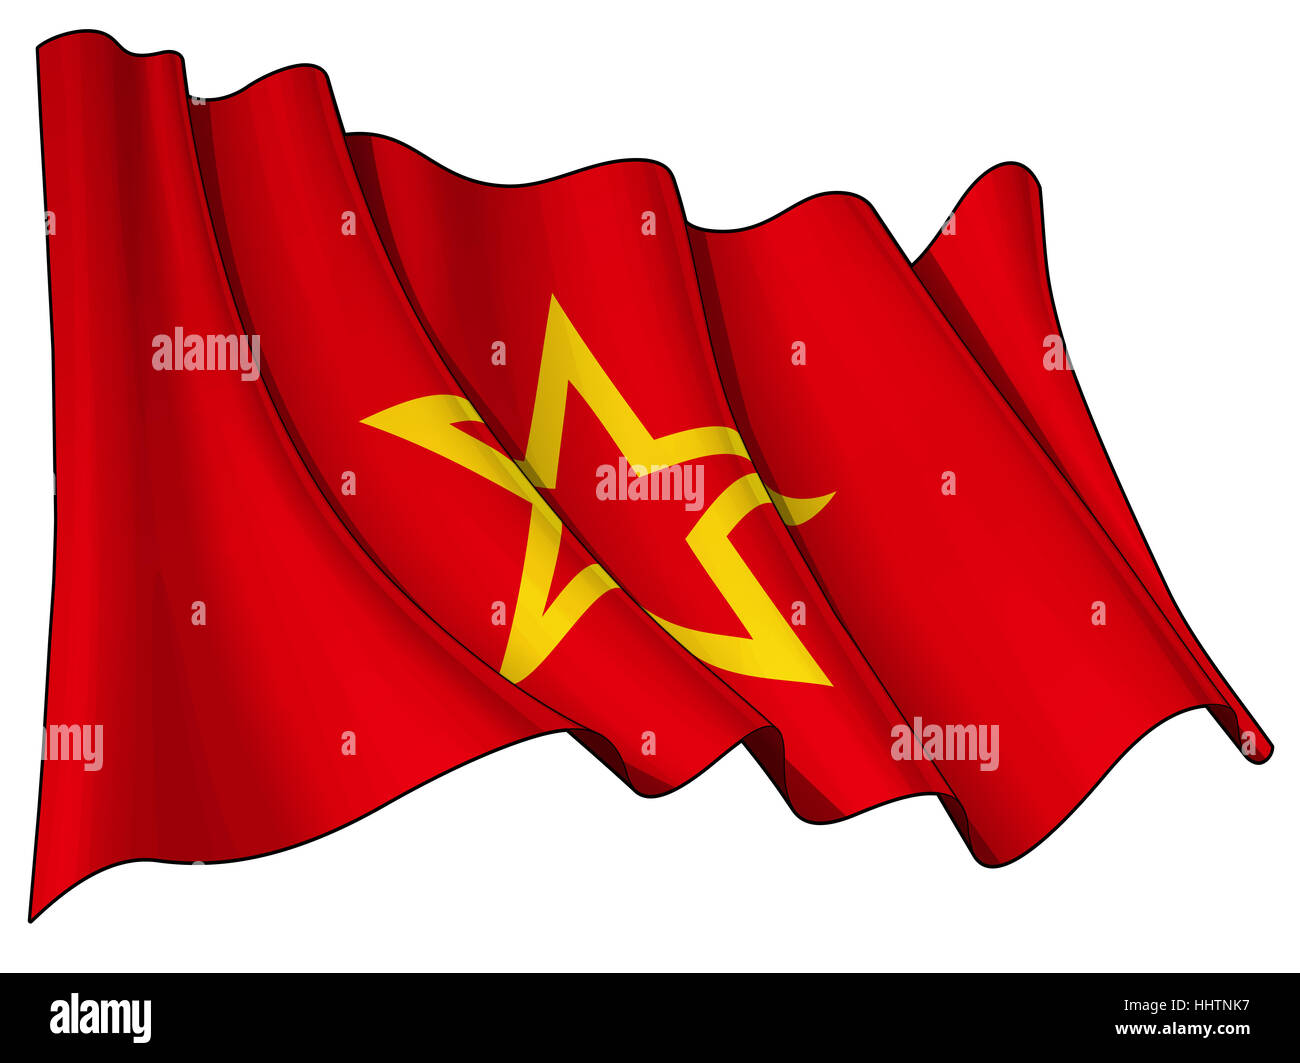 Bandiera, Unione sovietica, militare, rosso, stella, esercito, bandiera, Unione sovietica, banner, Foto Stock